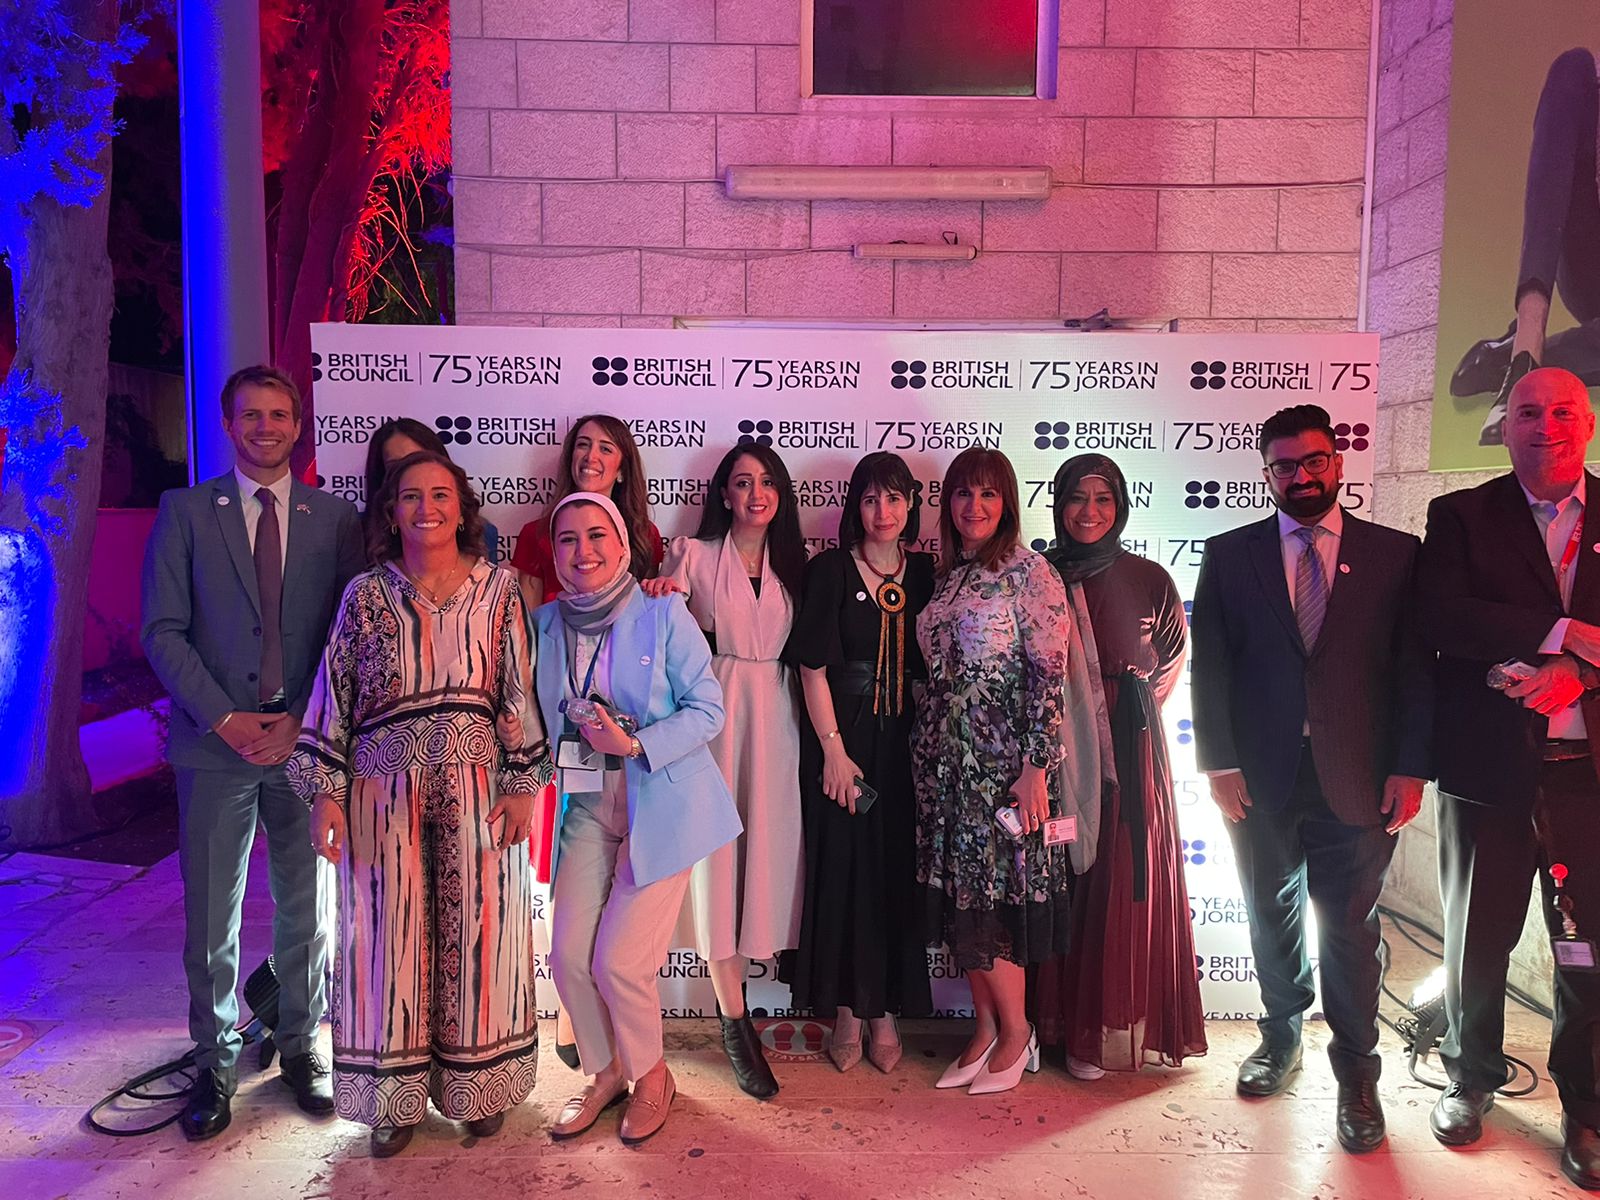 المجلس الثقافي البريطاني يحتفل بالذكرى الـ 75 لتأسيسه في الأردن 